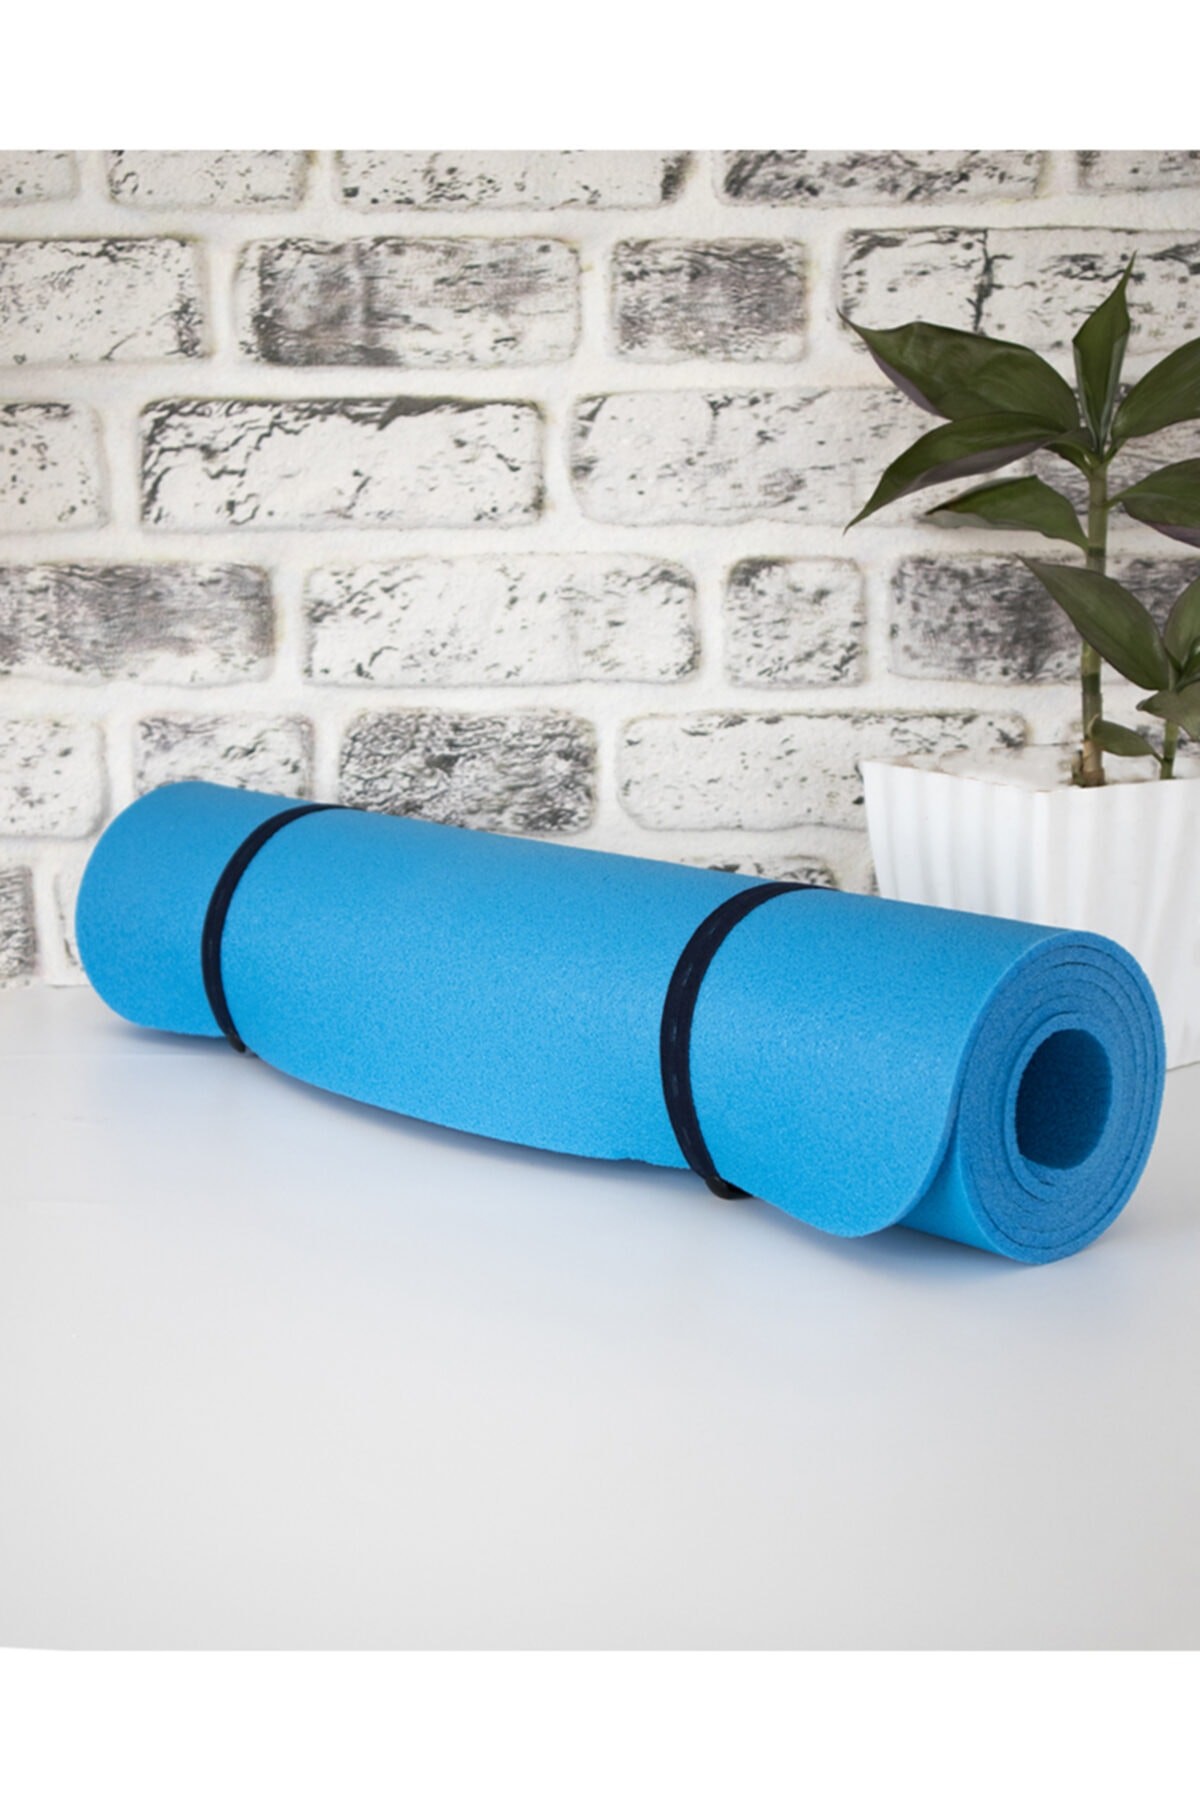 Mavi 5mm 60cm X 180cm Spor Kamp Minderi Yoga Pilates Matı